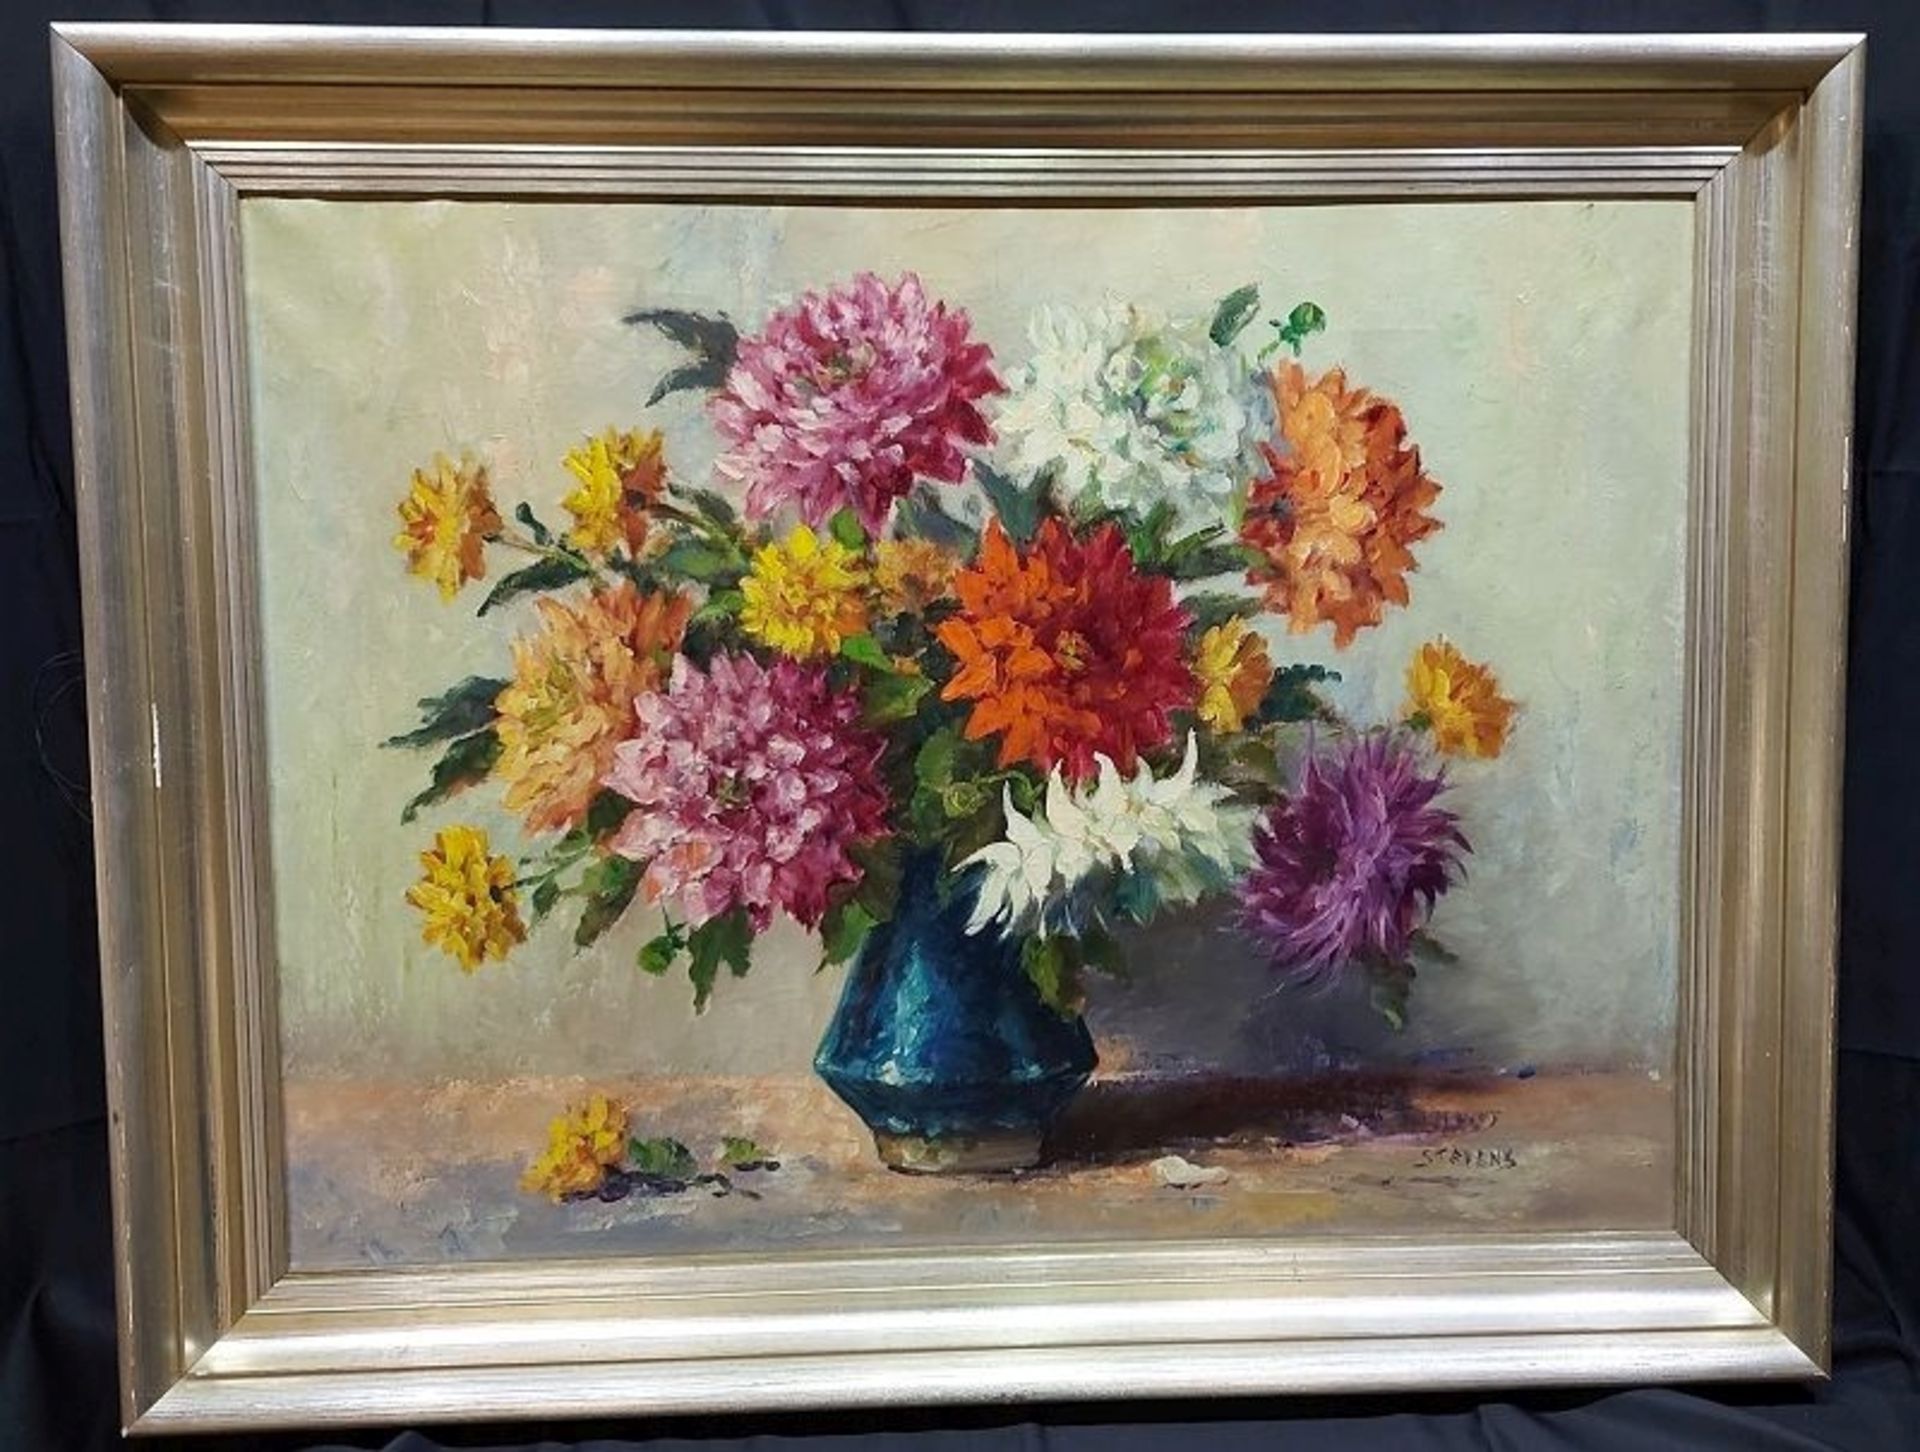 Großes Ölbild "Stevens" Blumenstilleben 95 x 75cm - Bild 6 aus 6